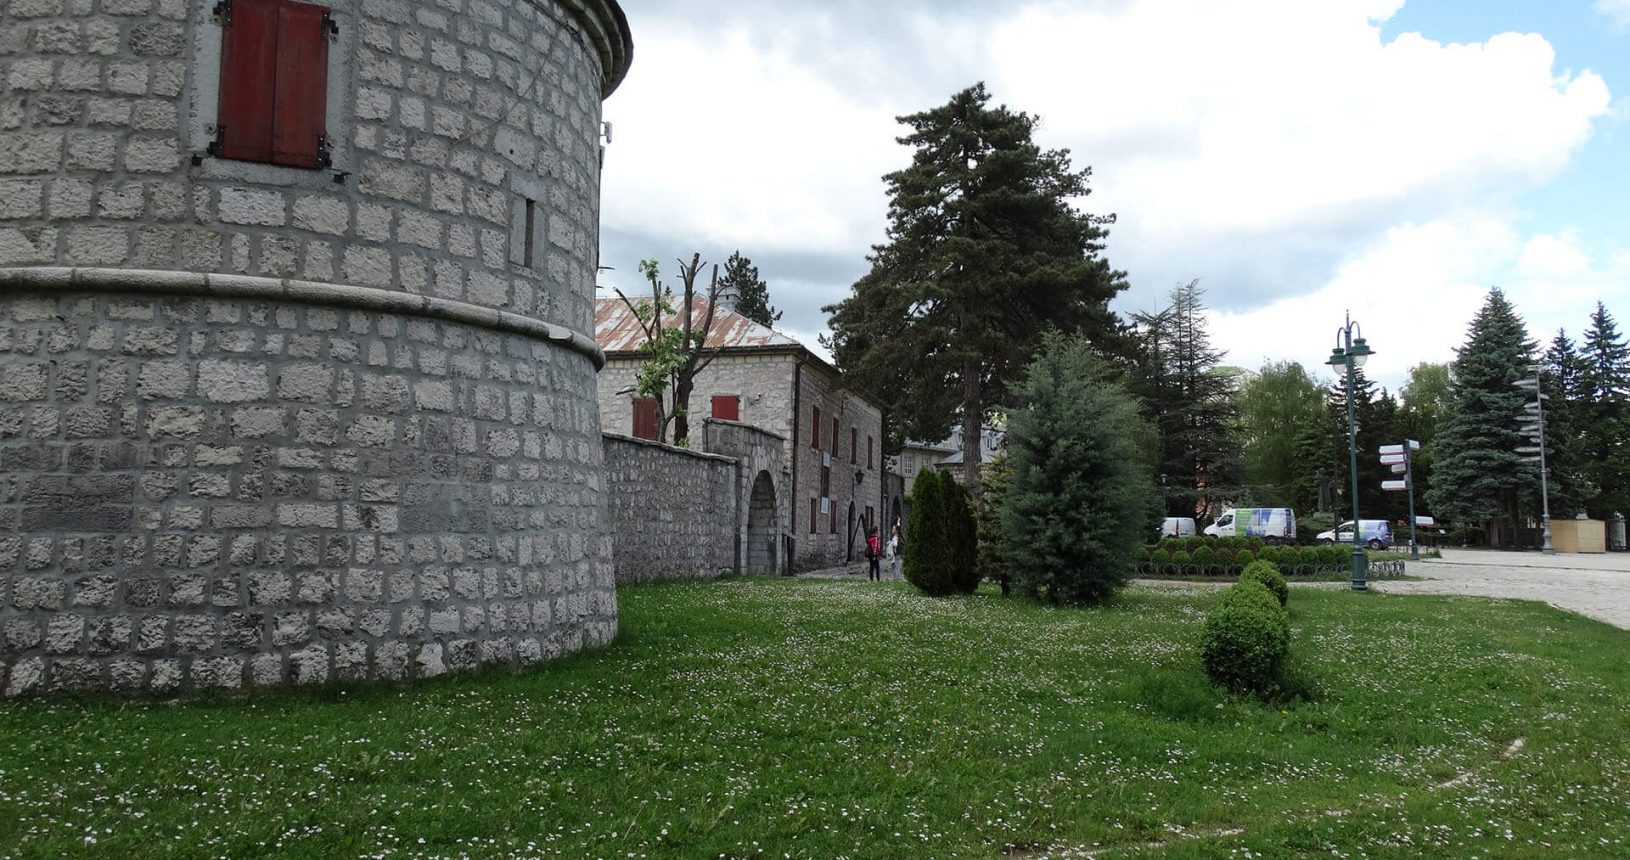 City sights in Cetinje